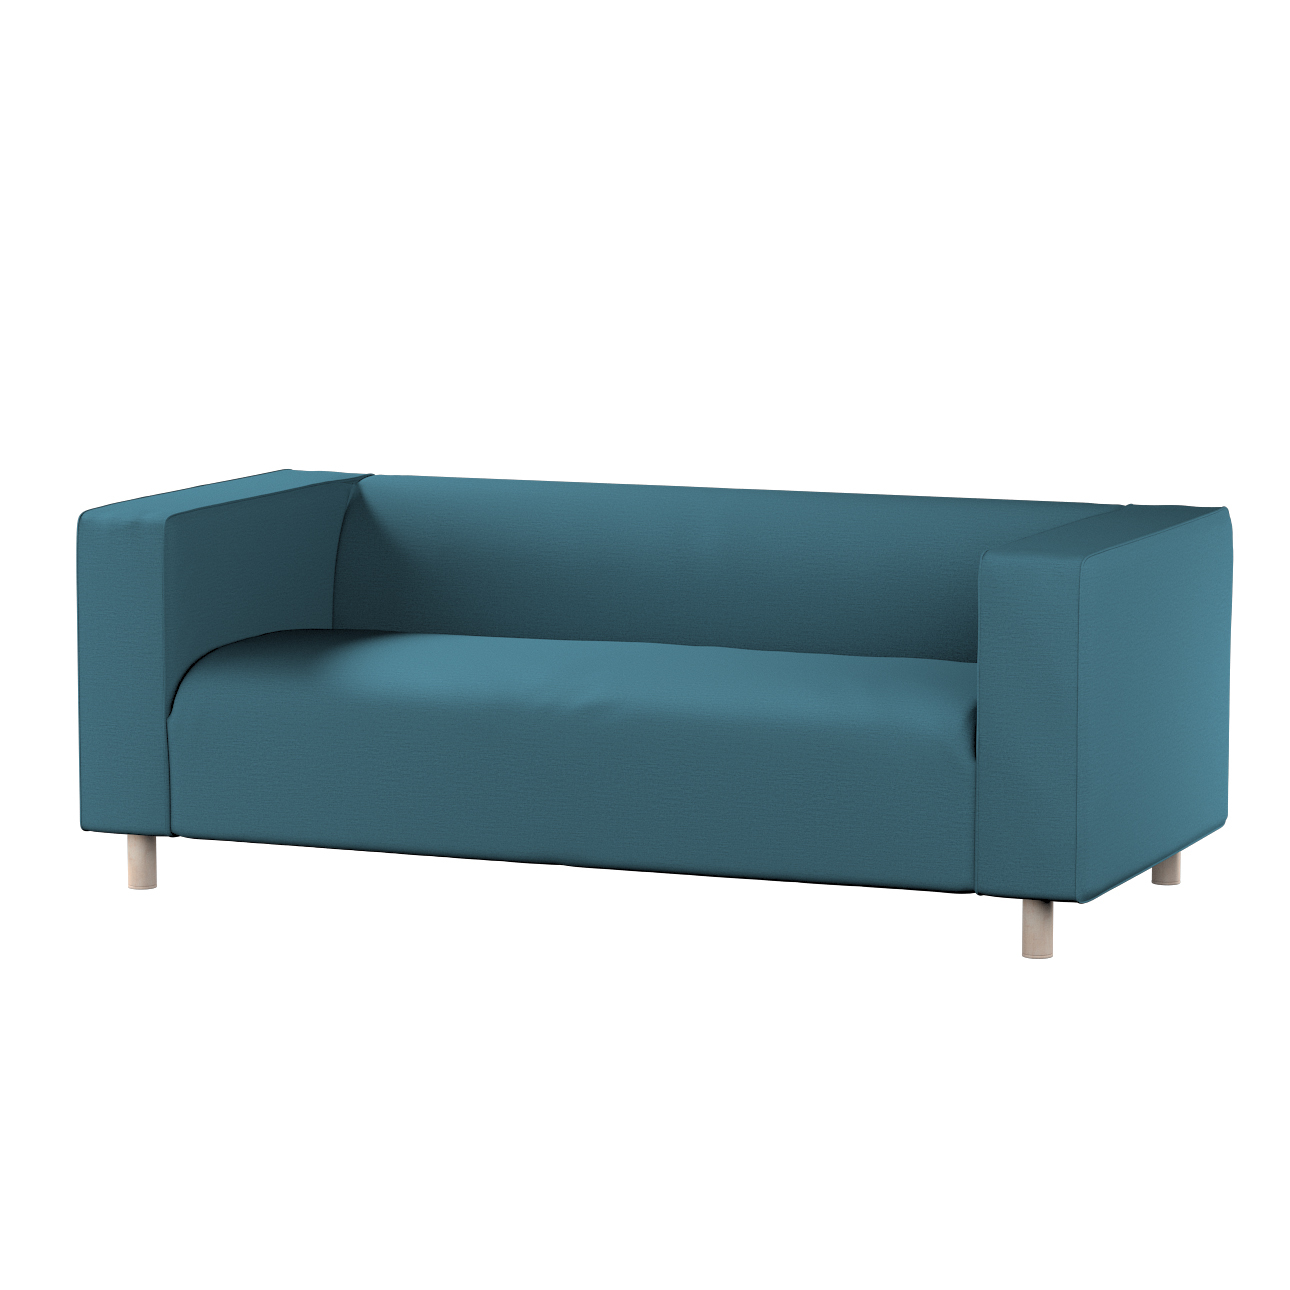 Bezug für Klippan 2-Sitzer Sofa, dunkelblau, Sofahusse, Klippan 2-Sitzer, L günstig online kaufen